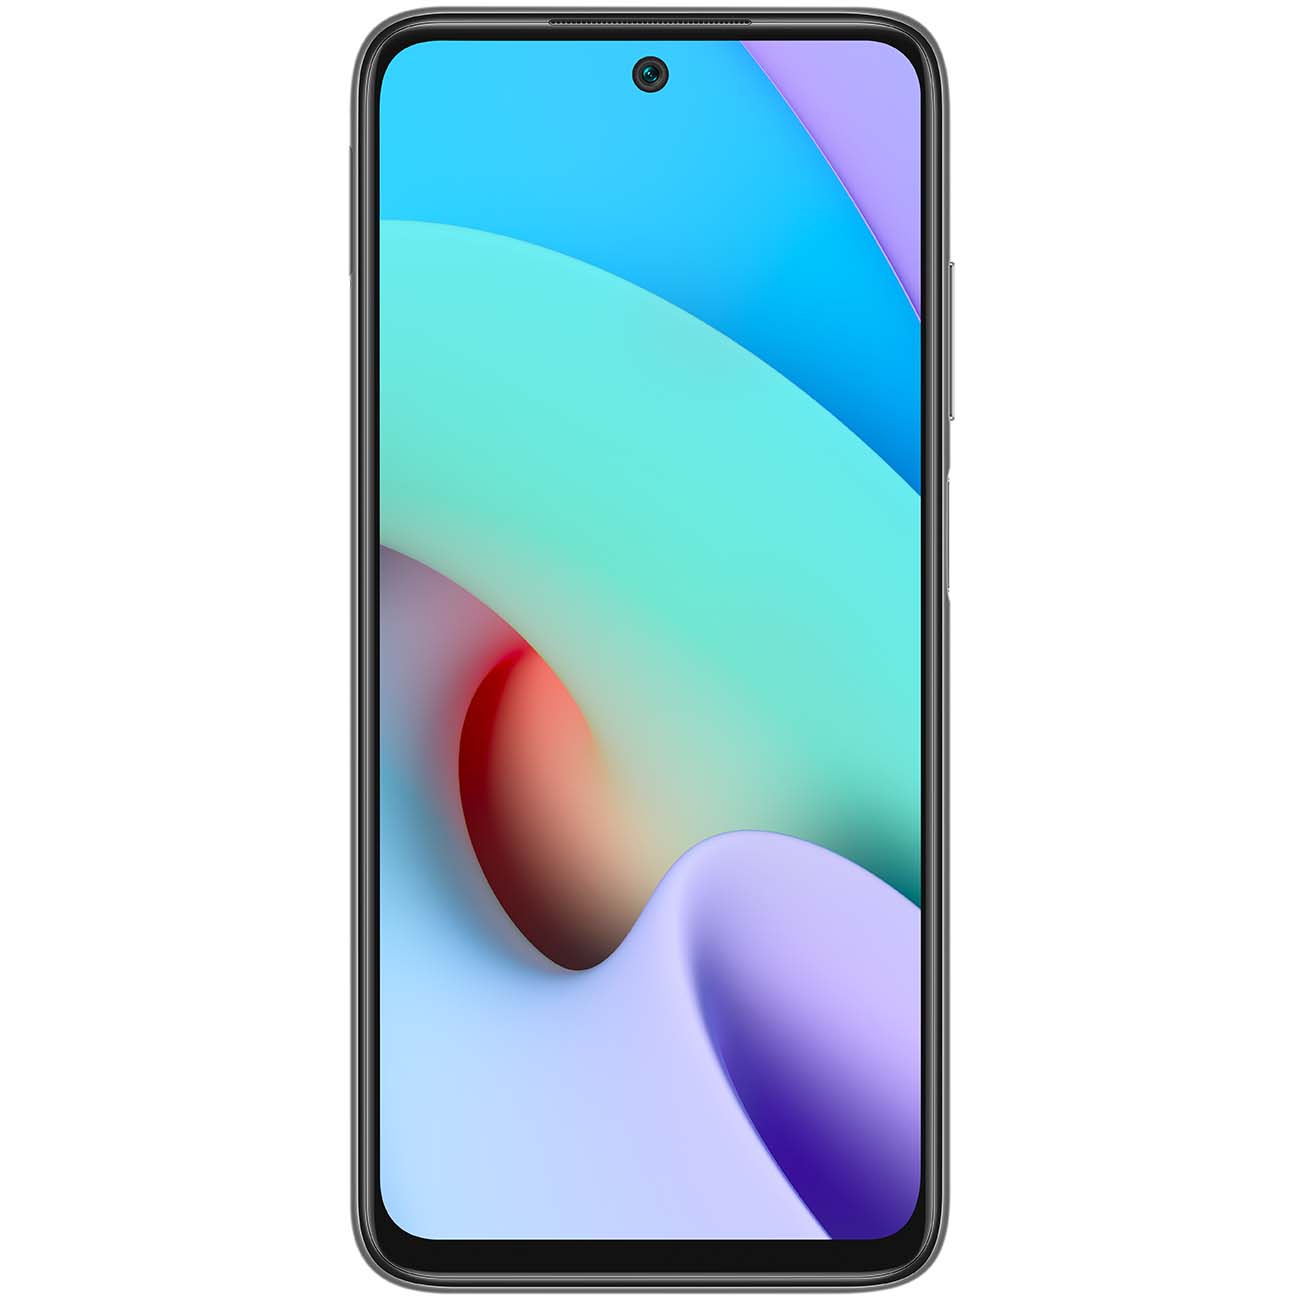 Купить смартфон xiaomi redmi 10 4+64gb carbon gray Смартфоны в официальном магазине Apple, Samsung, Xiaomi. iPixel.ru Купить, заказ, кредит, рассрочка, отзывы,  характеристики, цена,  фотографии, в подарок.